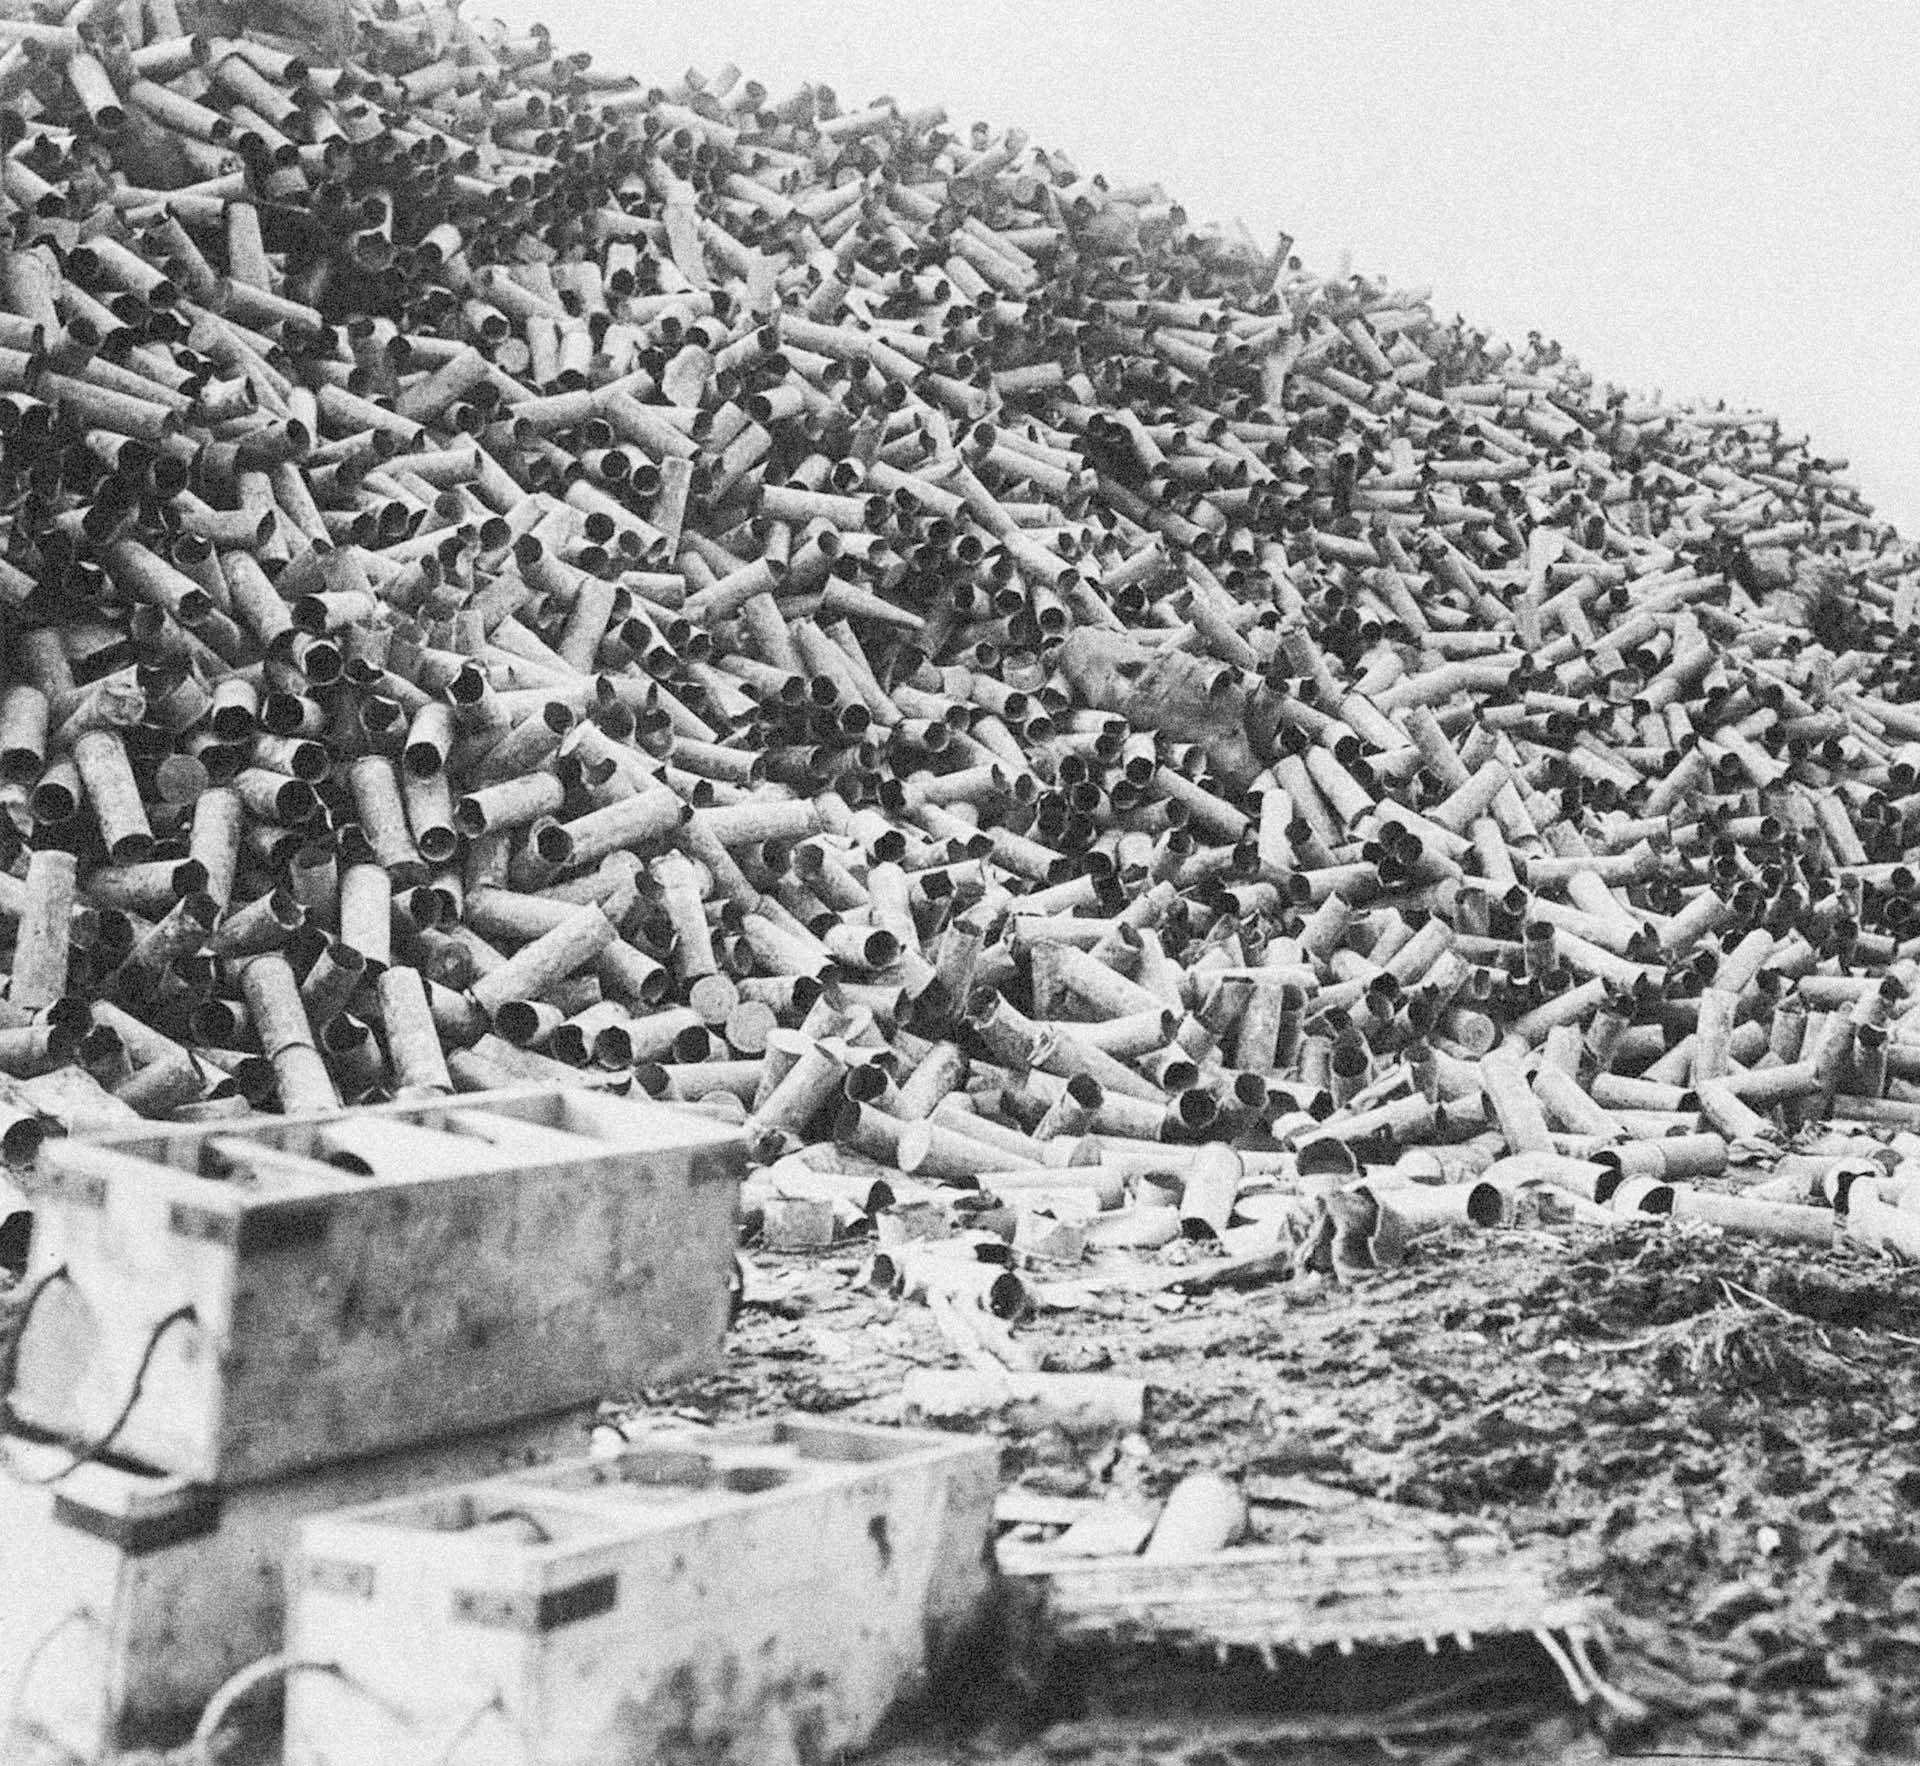 W tygodniu poprzedzającym bitwę nad Sommą wystrzelono ponad 1,5 mln pocisków artyleryjskich